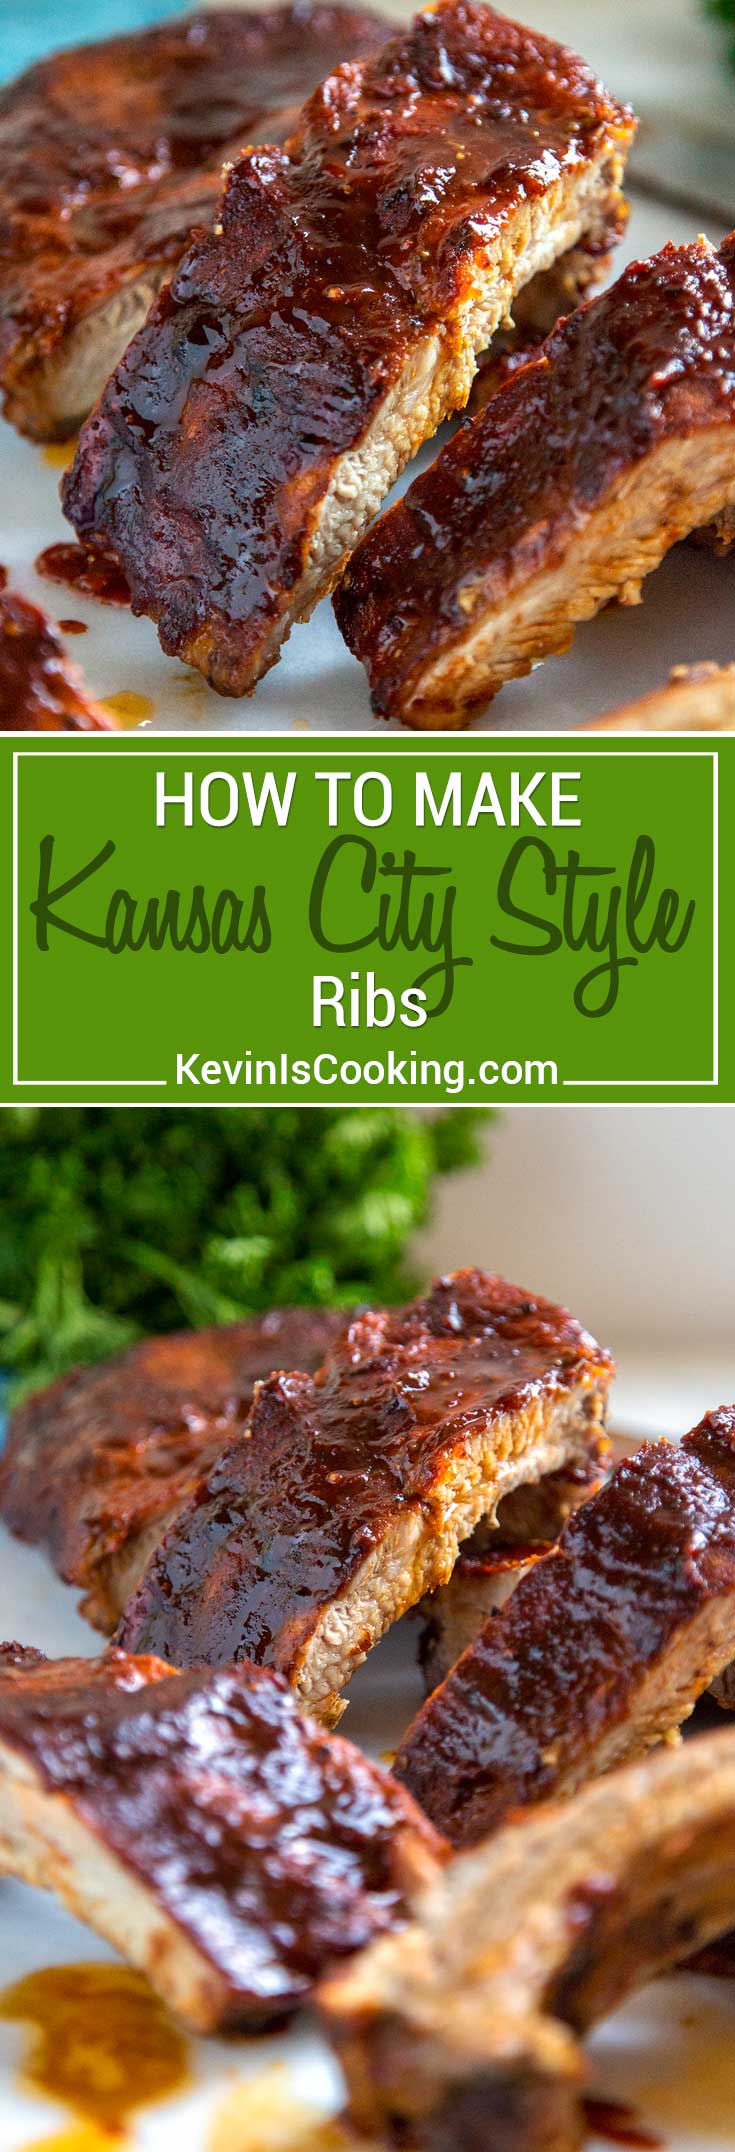 Kansas city style ribs